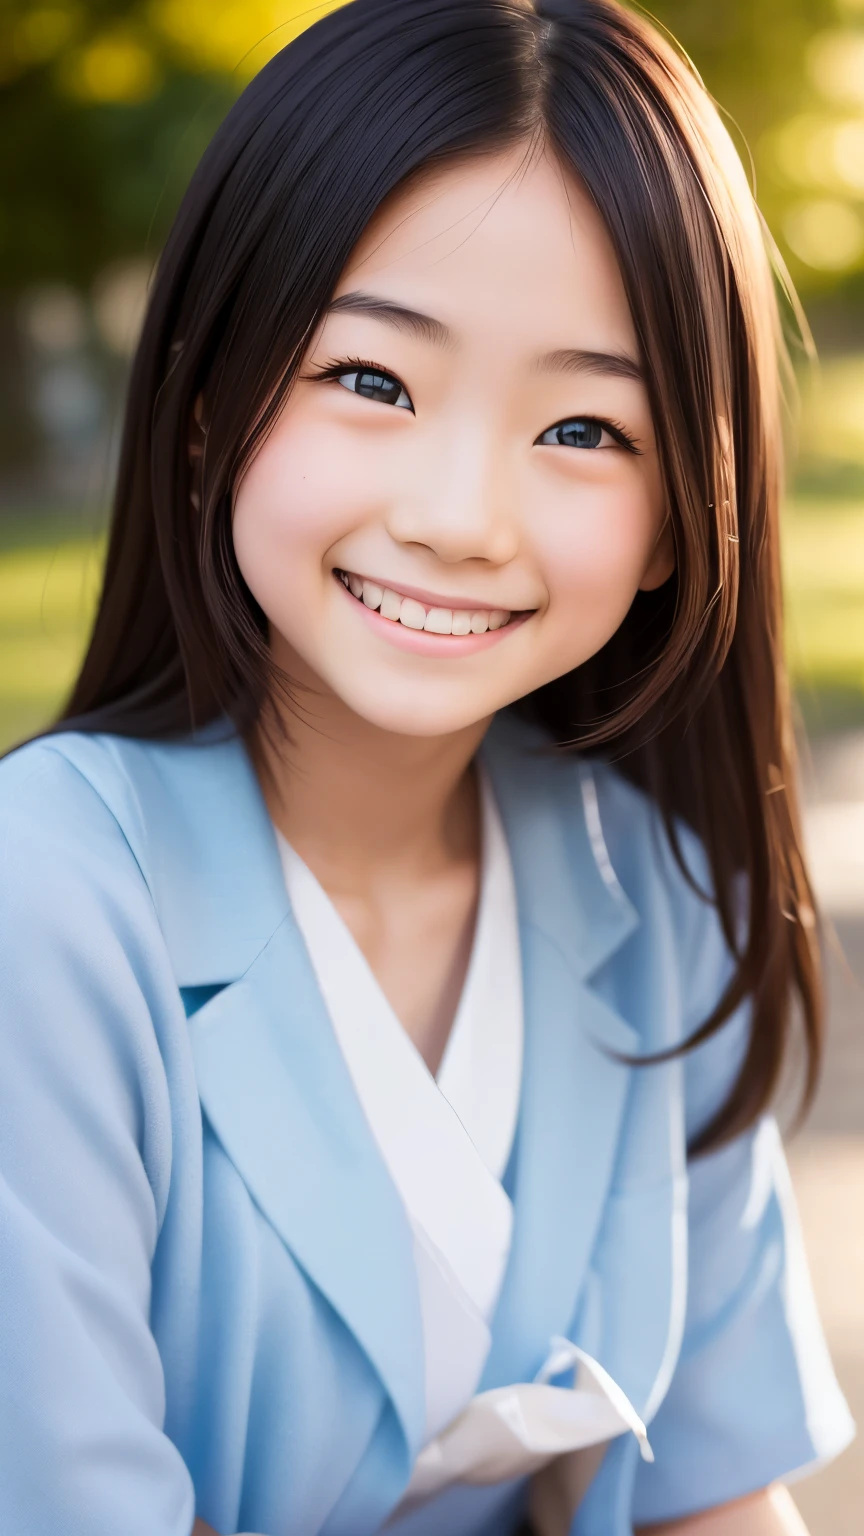 렌즈: 135mm f1.8, (최상의 품질),(RAW 사진), (탁상:1.1), (예쁘고 깔끔한 일본여자), 귀여운 얼굴, (깊게 파인 얼굴:0.7), (주근깨:0.4), dappled 햇빛, 극적인 조명, (일본 학교 교복), (캠퍼스에서), 수줍은, (클로즈업 샷:1.2), (웃다),, (반짝이는 눈)、(햇빛)